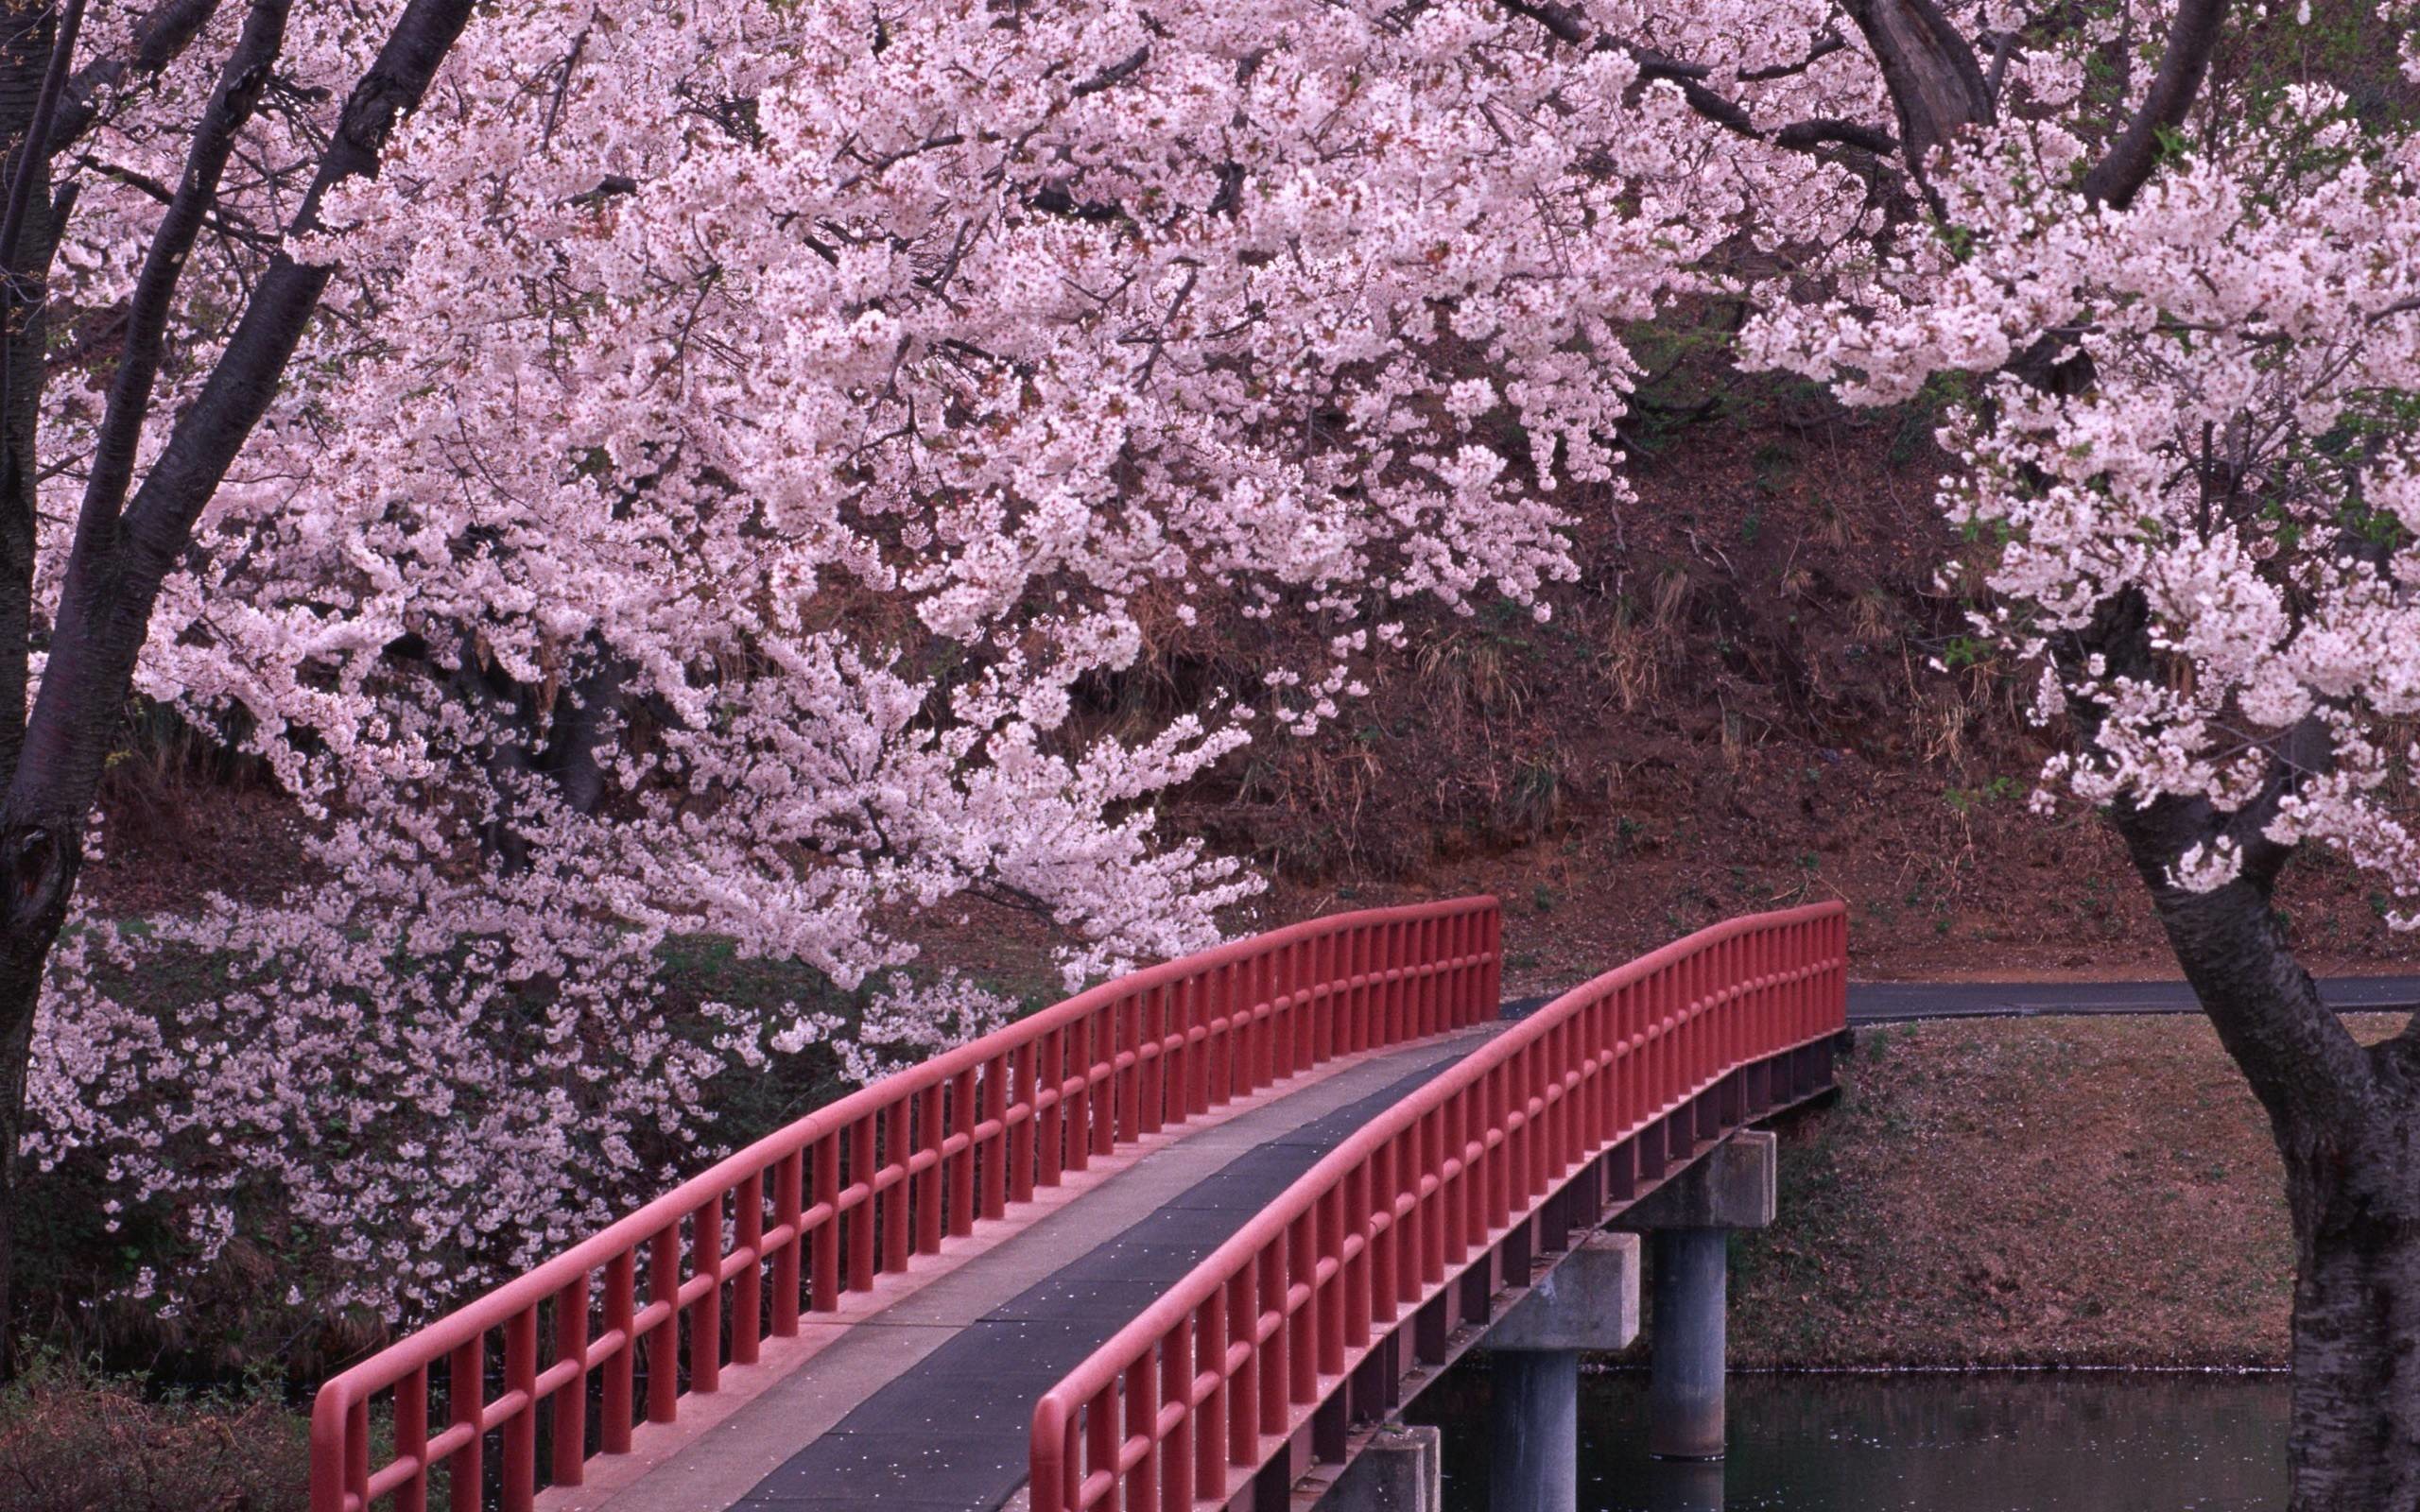 Japanese Cherry Blossom Wallpaper